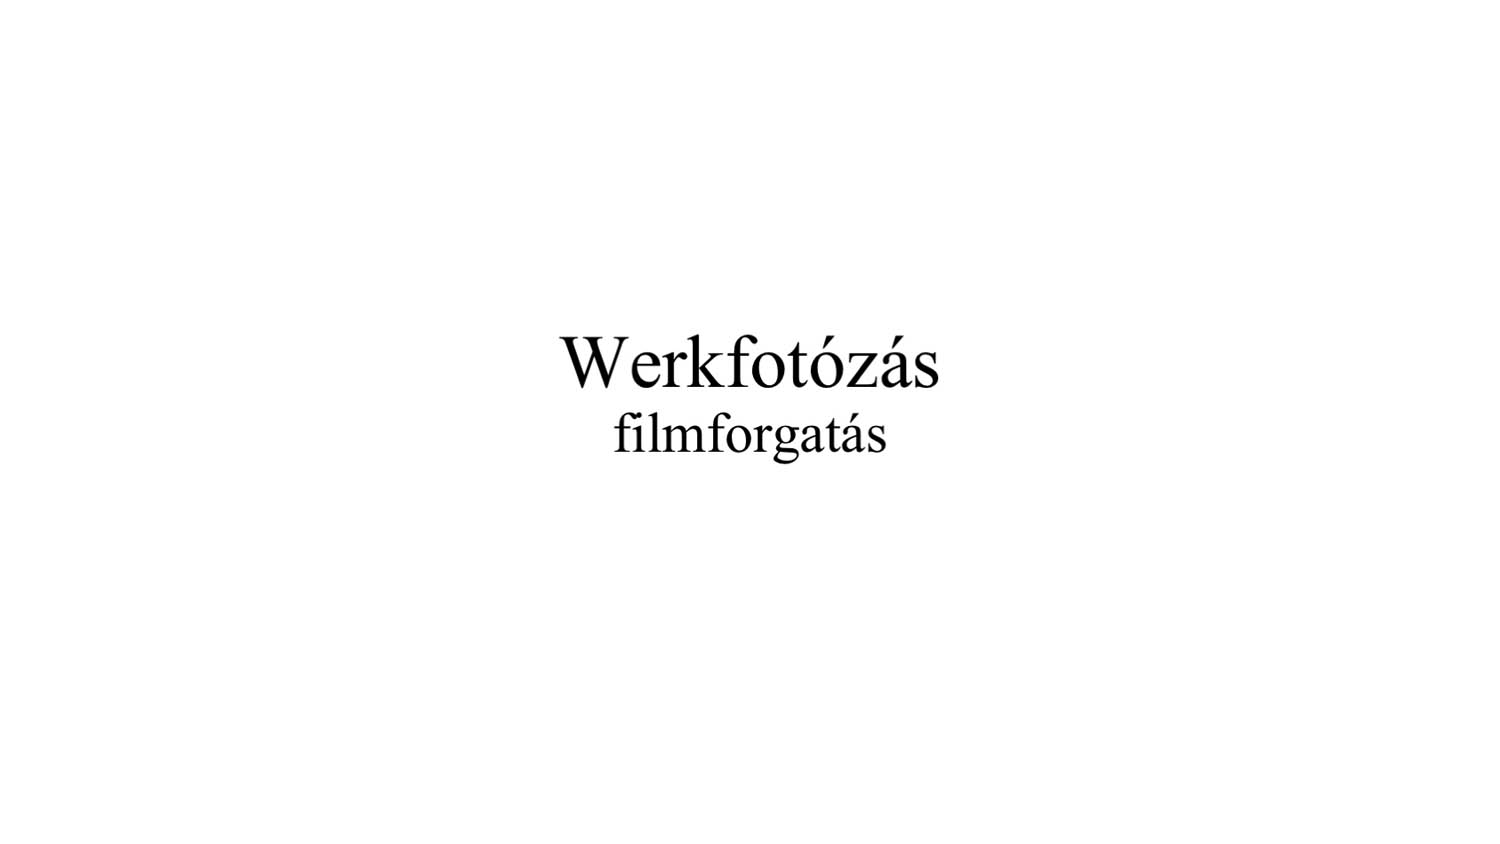 Mócz-Horváth Edina fotográfus fotográfus vizsgaremek 